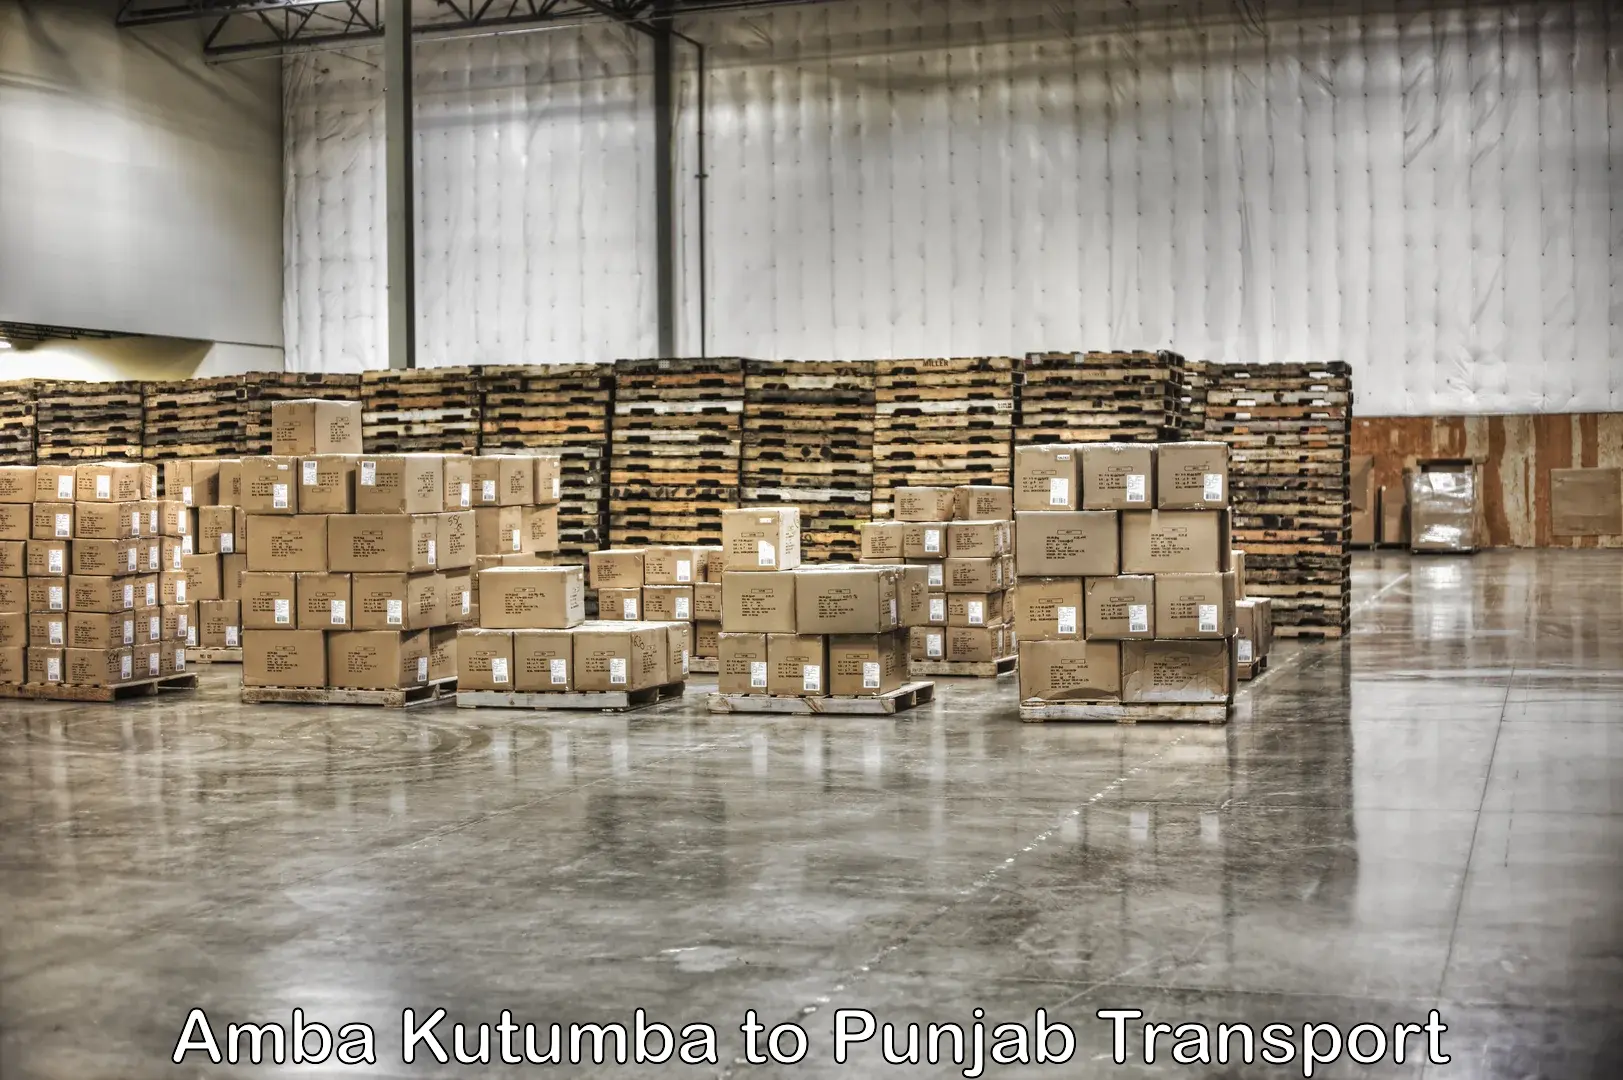 Interstate transport services Amba Kutumba to Punjab